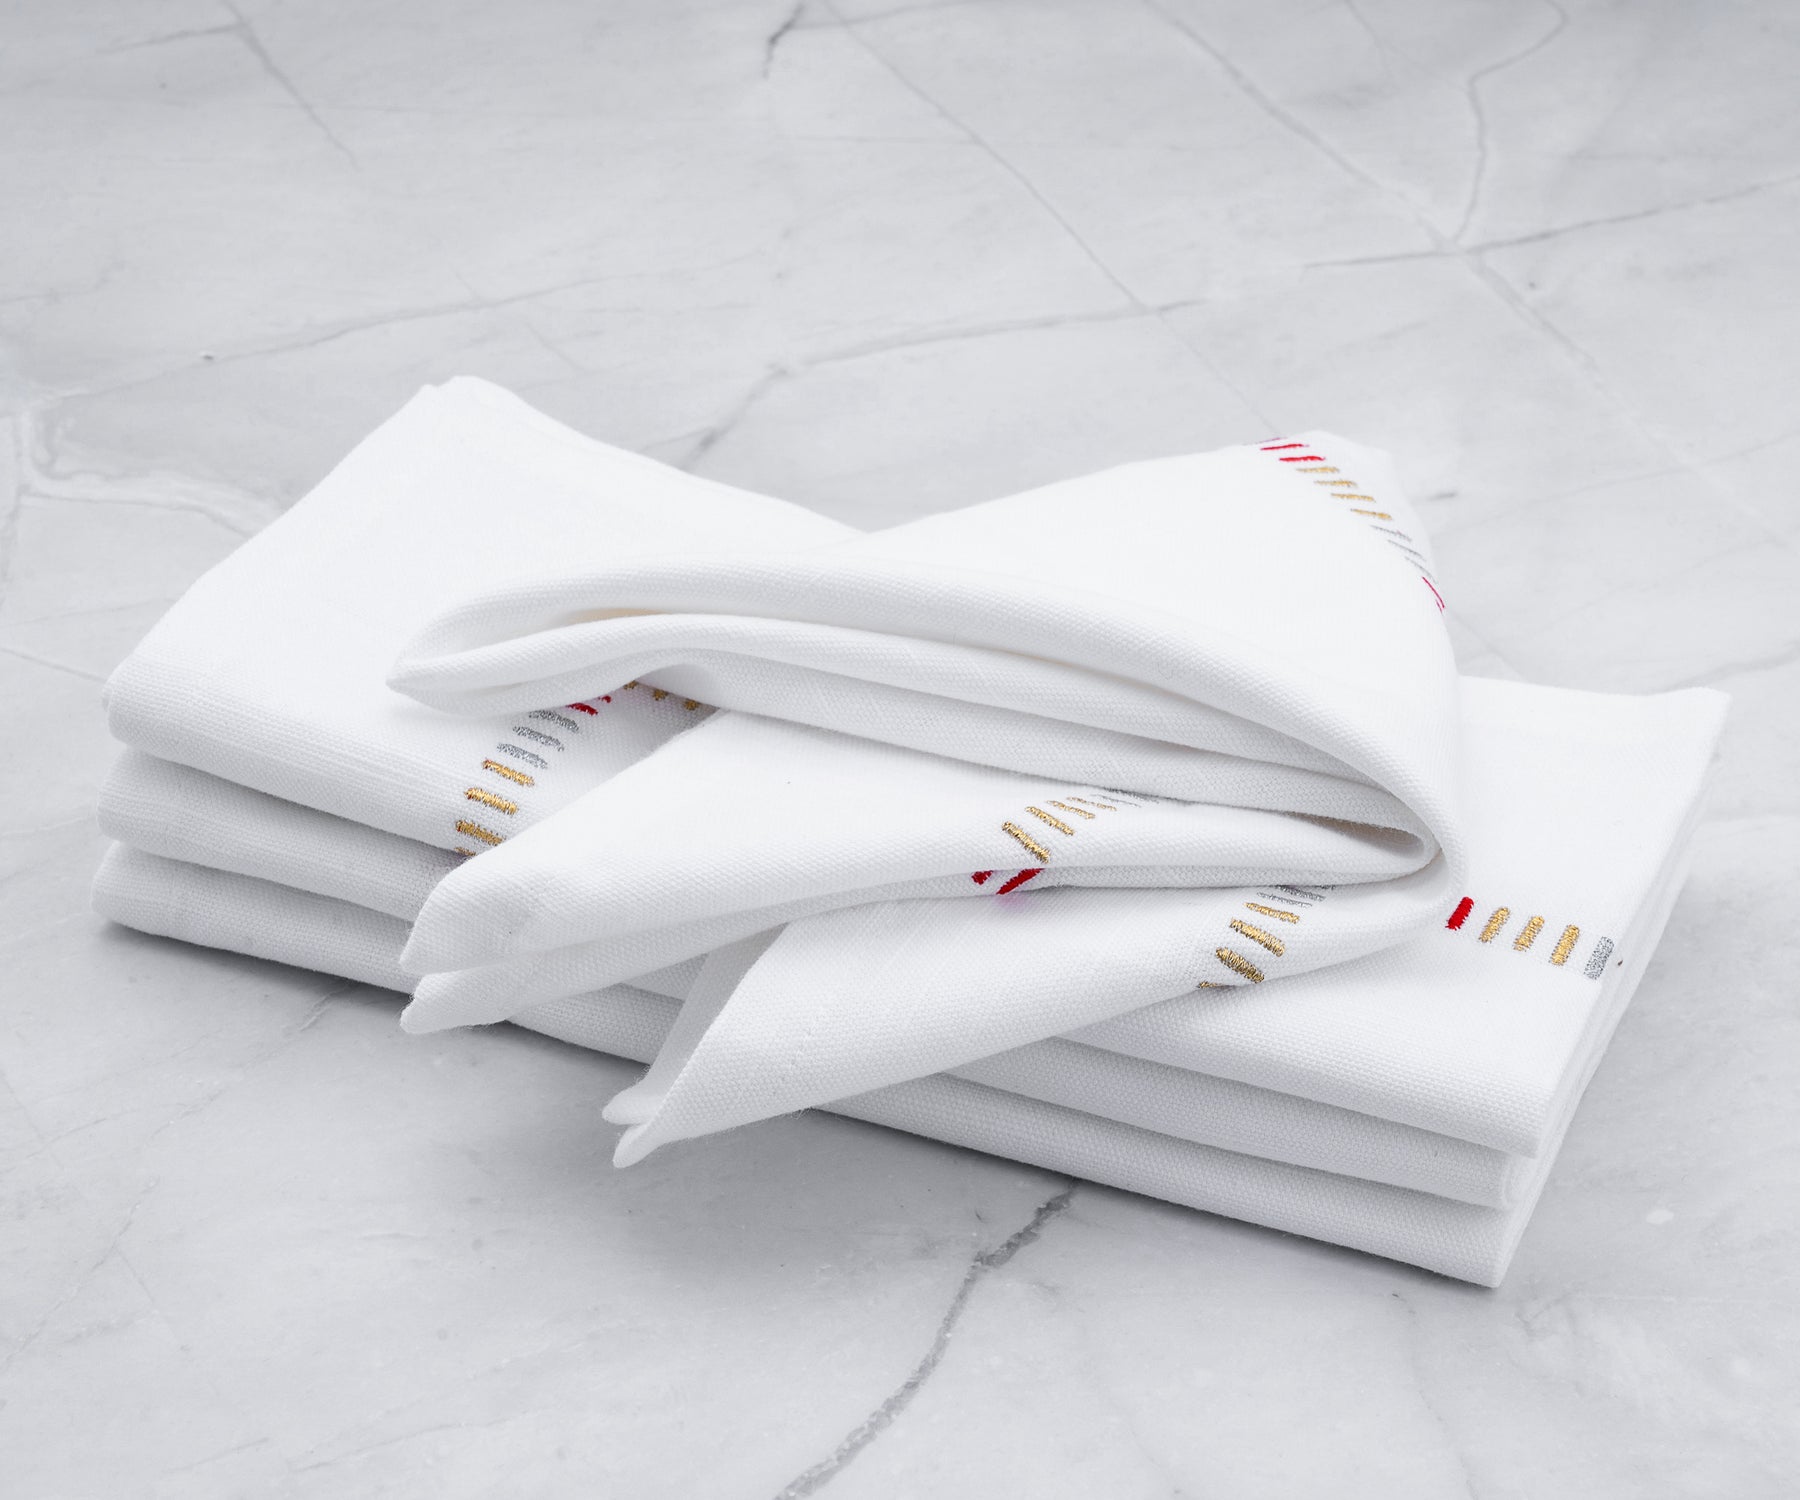 Wedding napkins designed to impress guests.